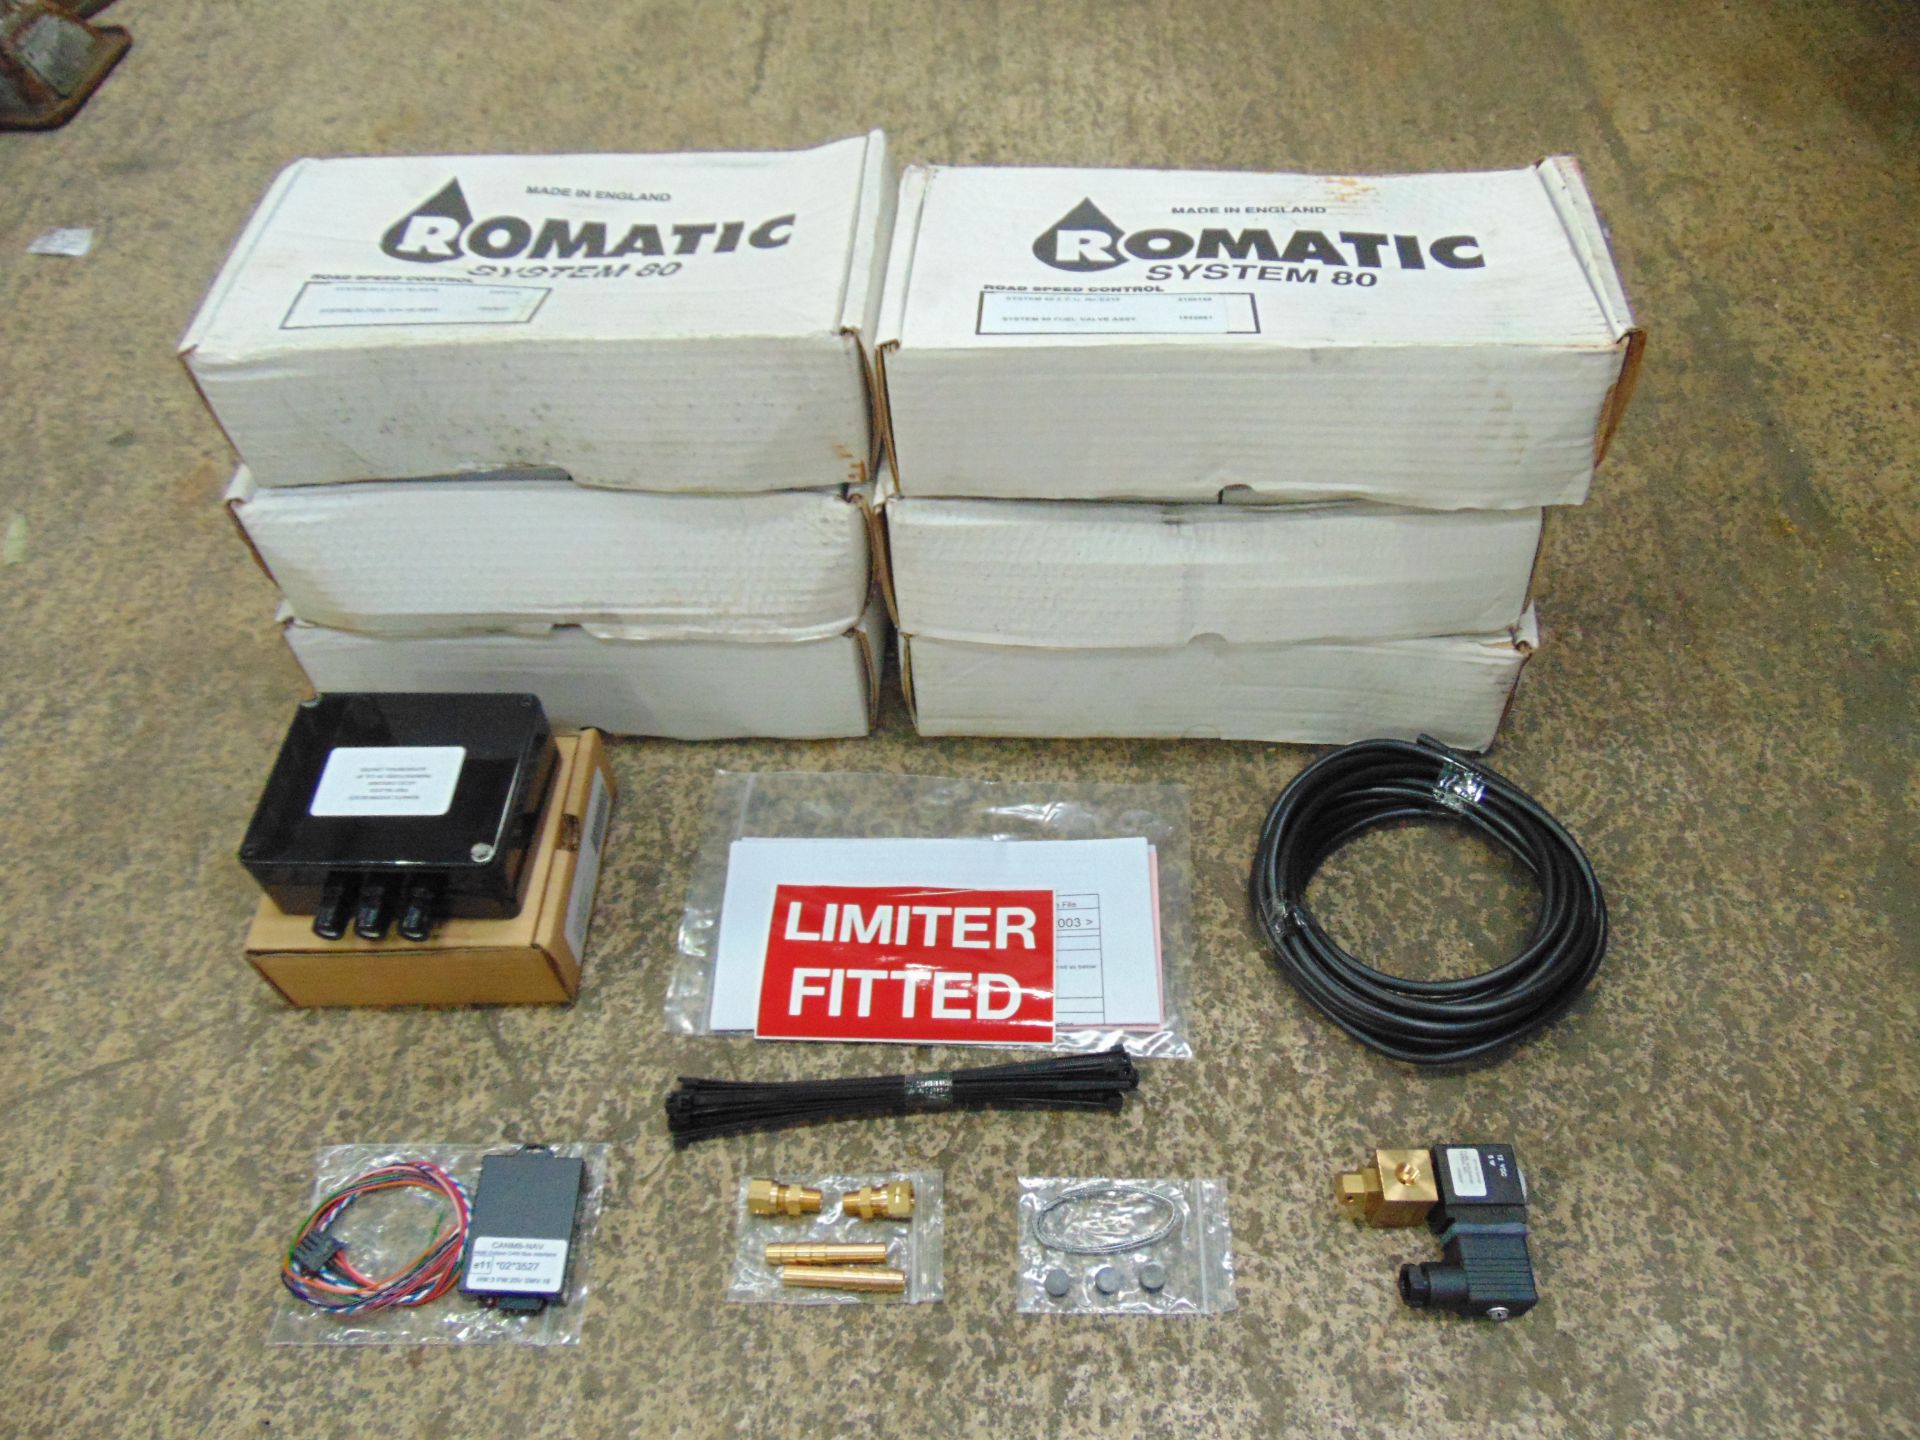 6 x Romatic System 80 Limiter Kits